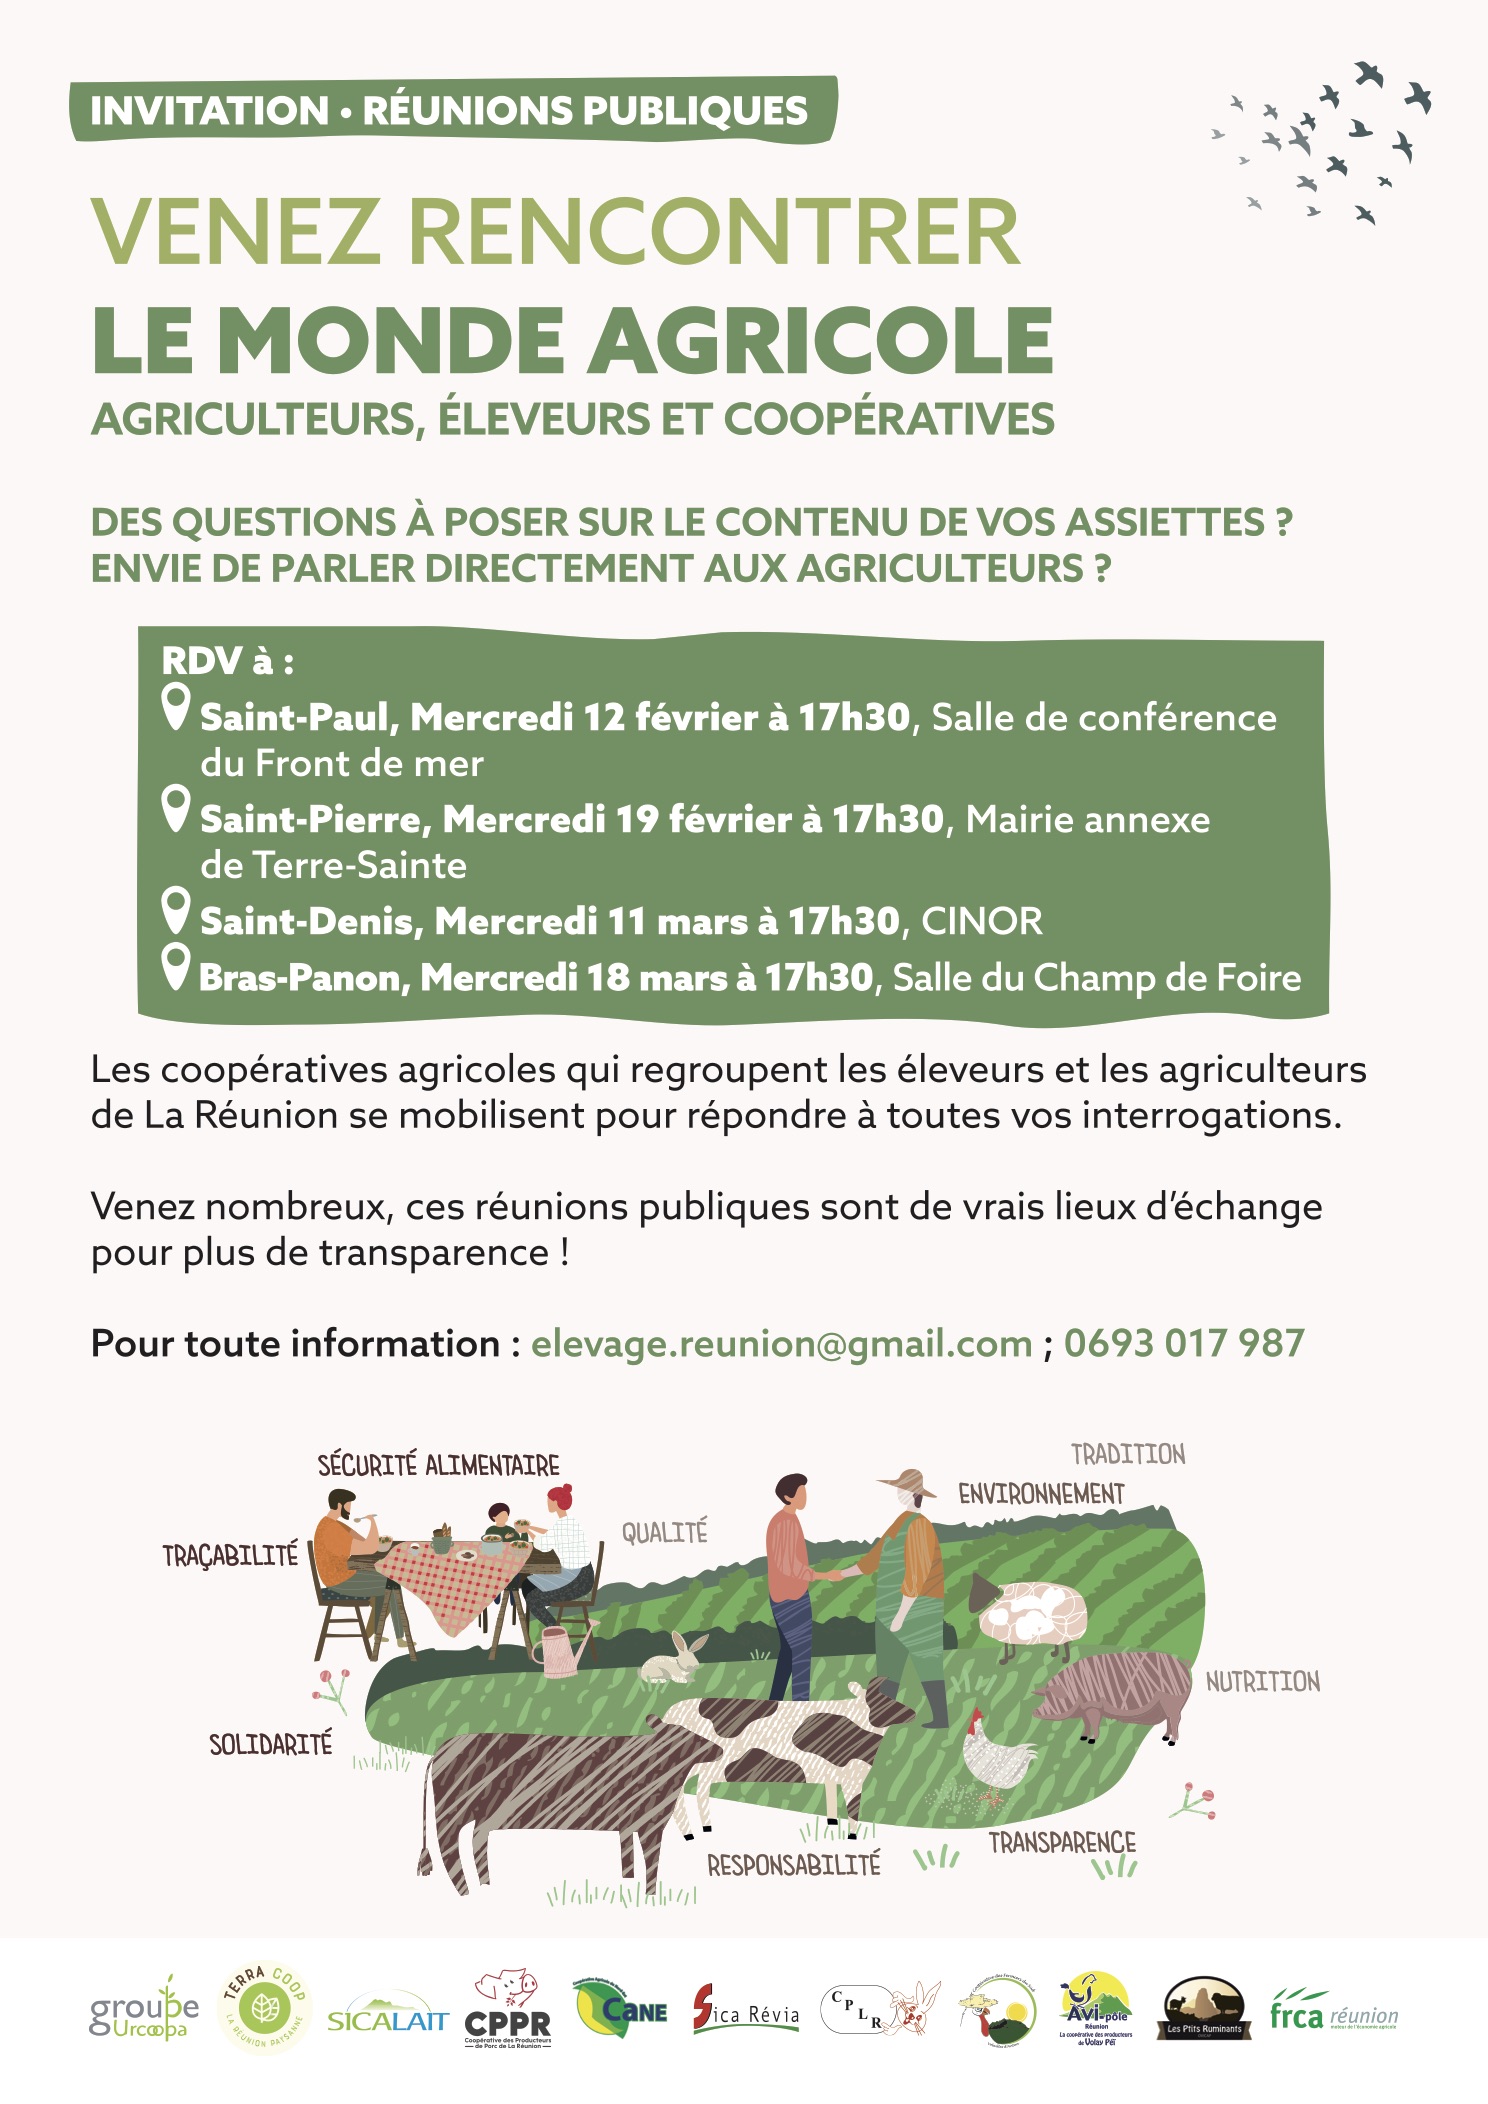 En savoir plus sur le monde agricole ce mercredi 12 février 2020